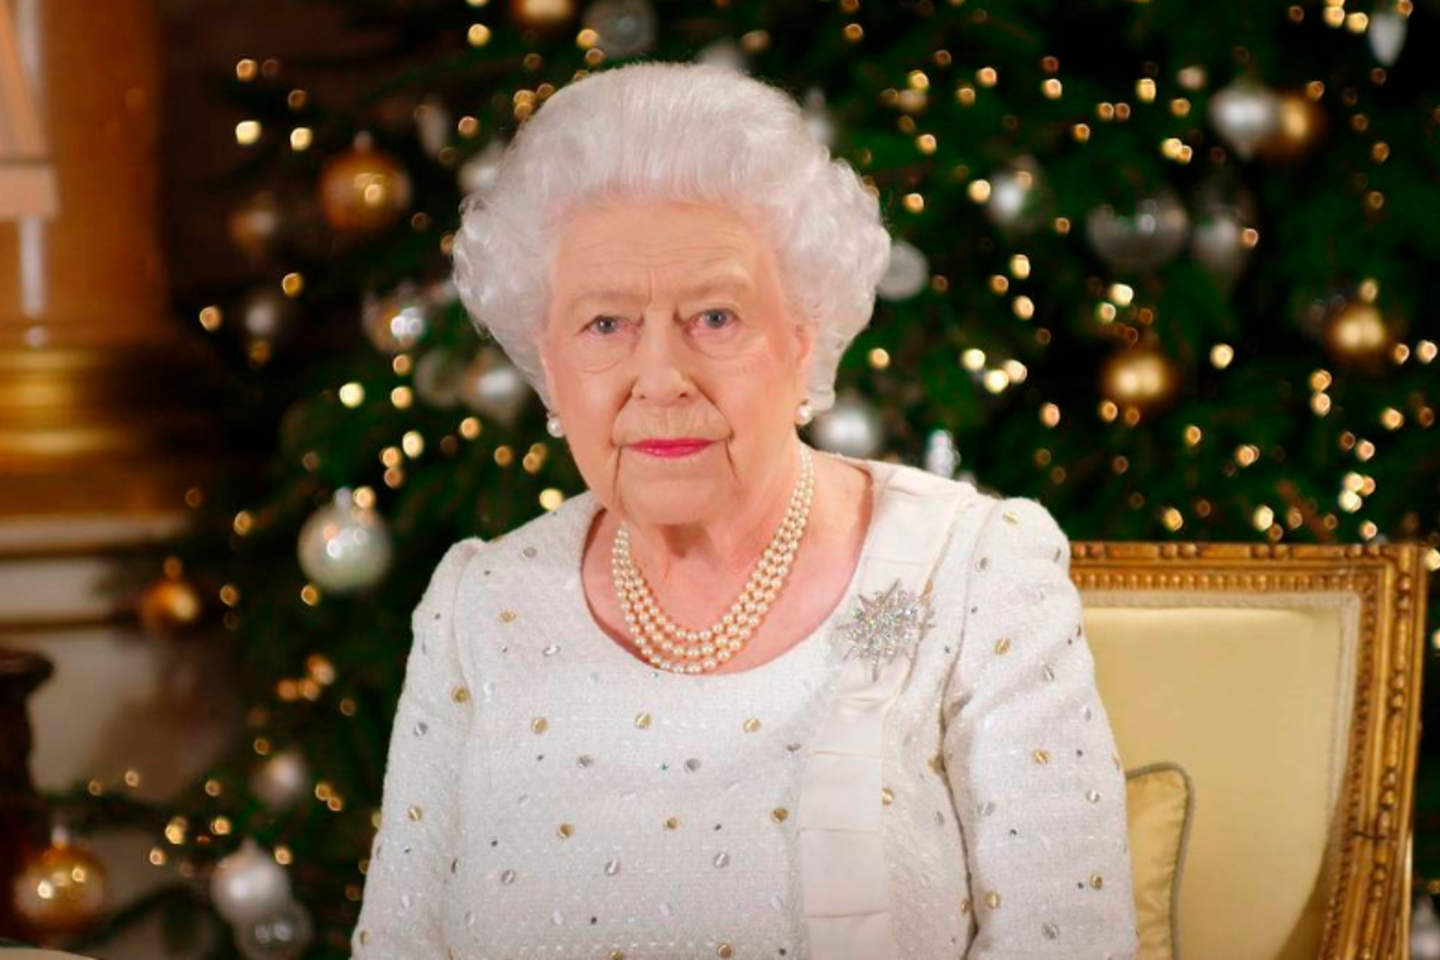  Karalienė su mokslininku susipažino 2014 metais per vieną labdaros renginį Šv. Džeimso rūmuose Londone.<br> AFP/Scanpix nuotr.